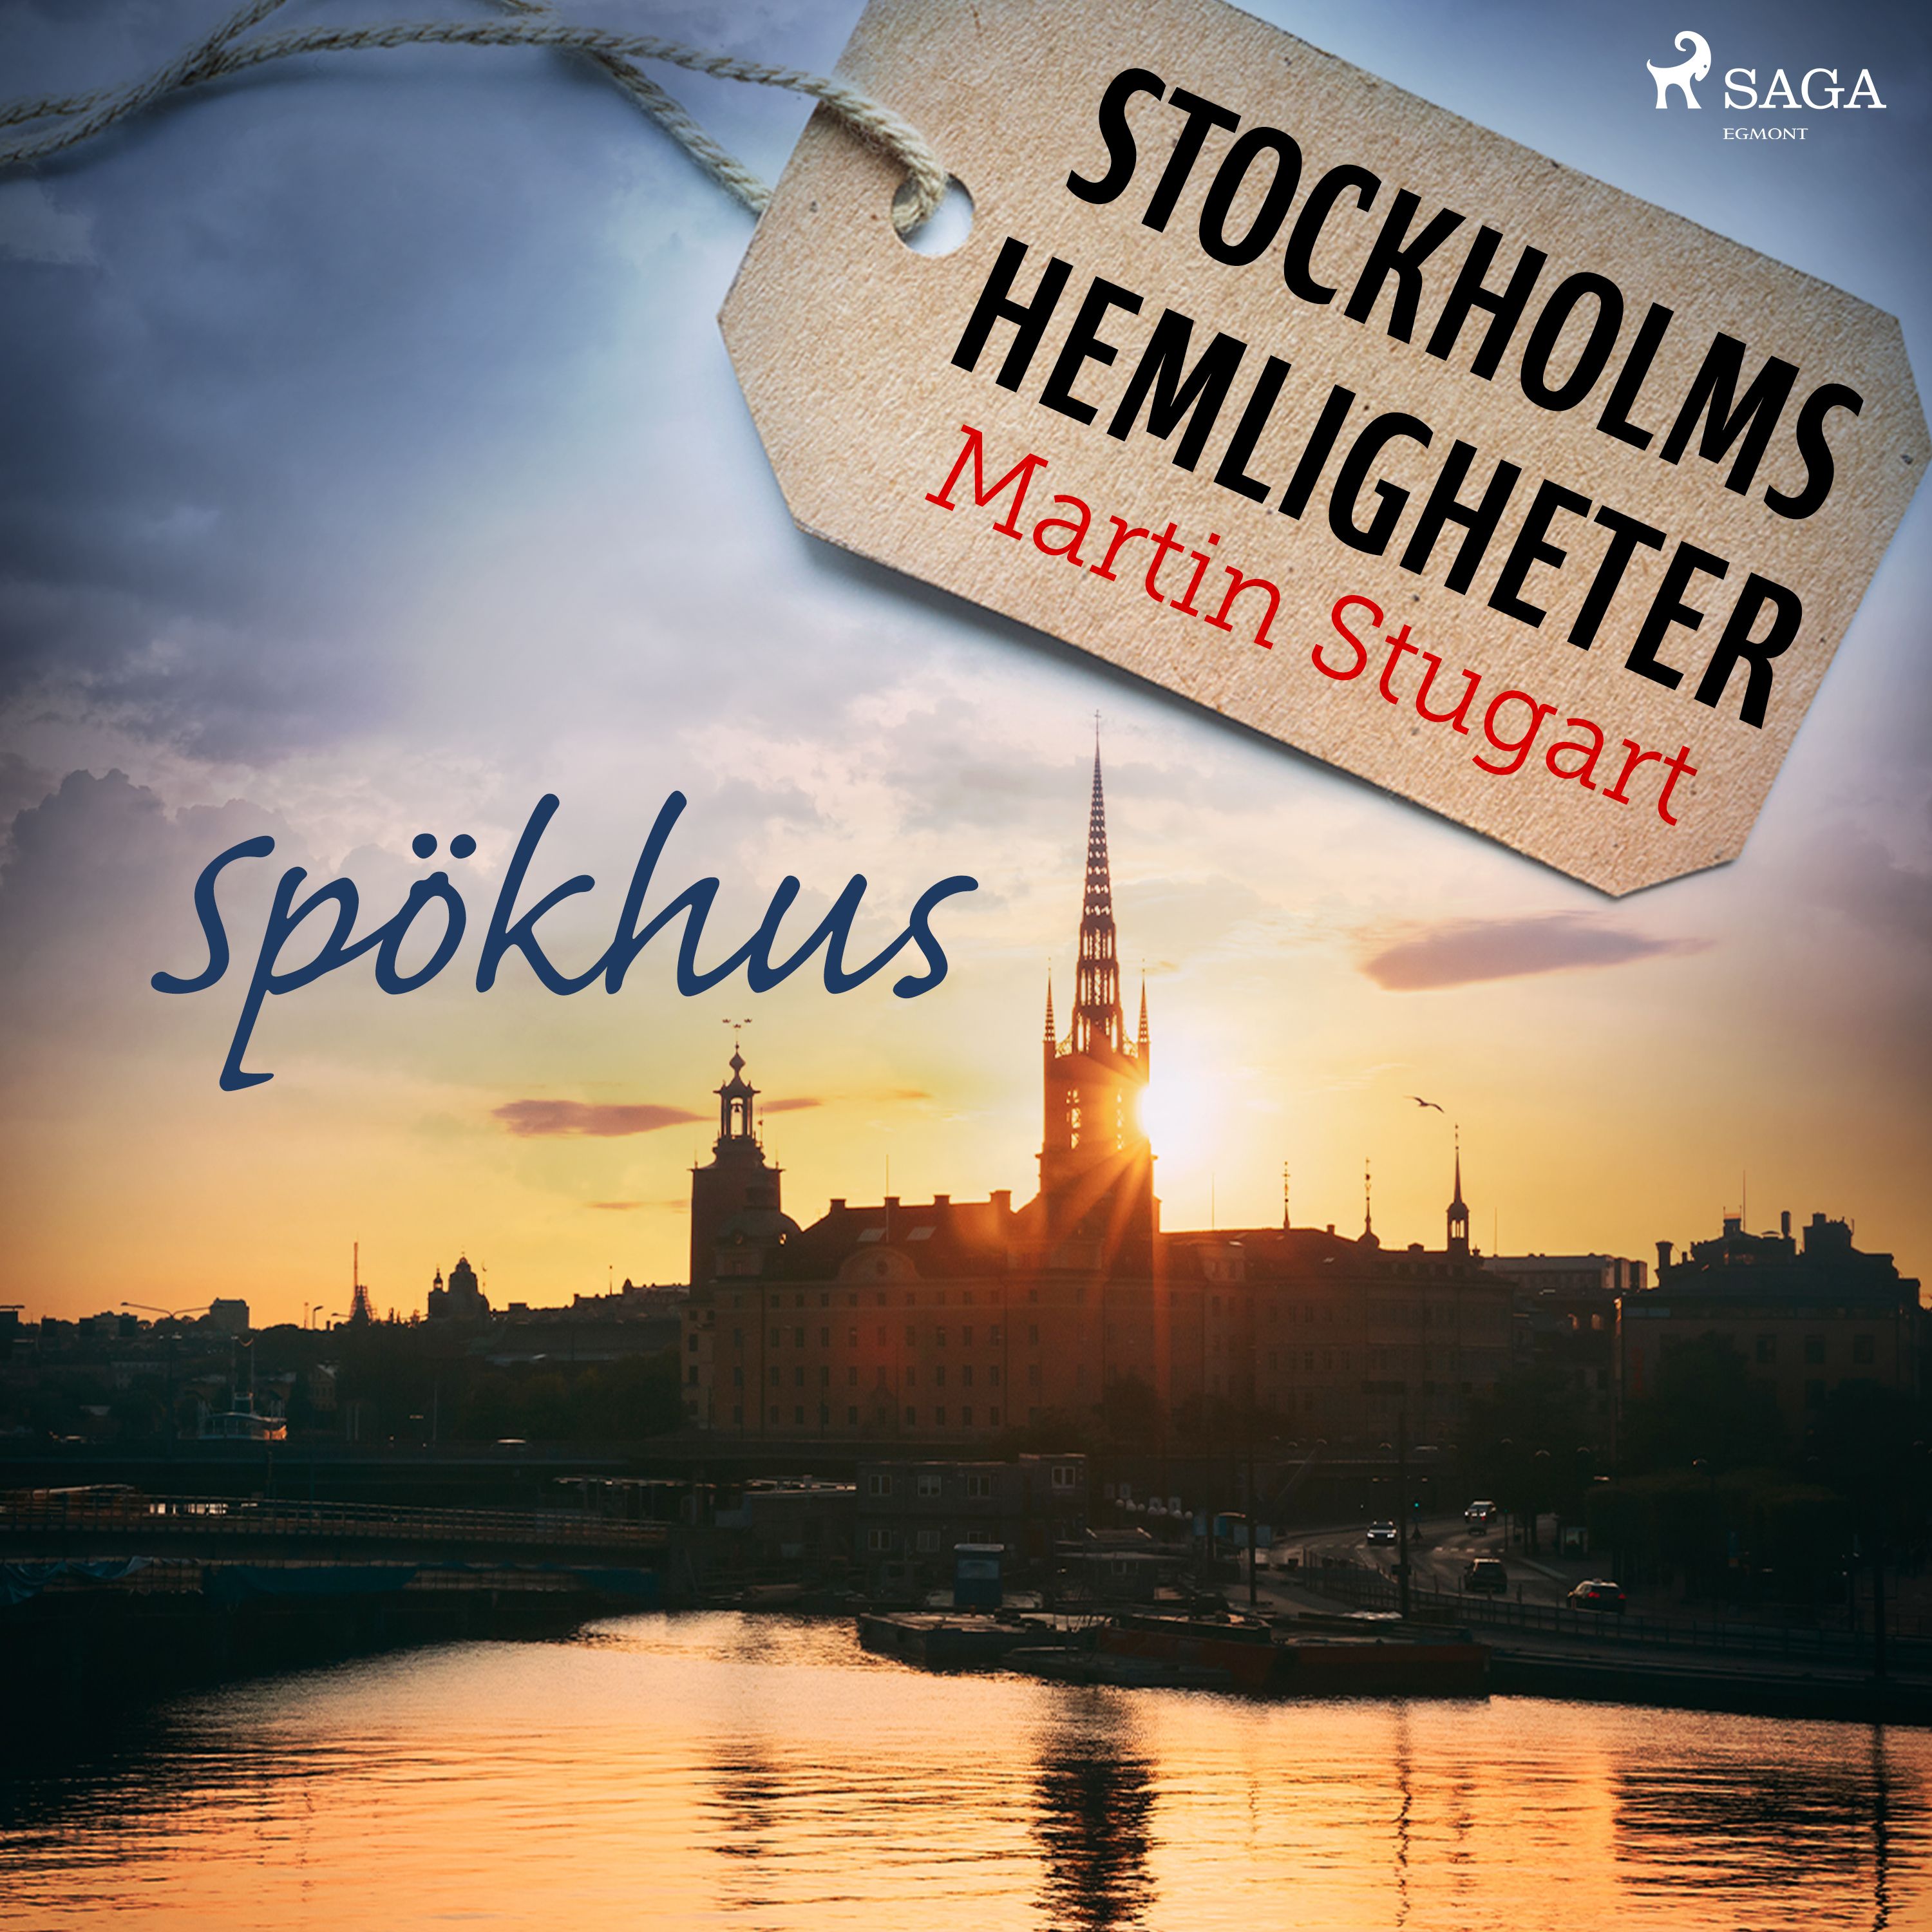 Stockholms hemligheter: Spökhus, lydbog af Martin Stugart